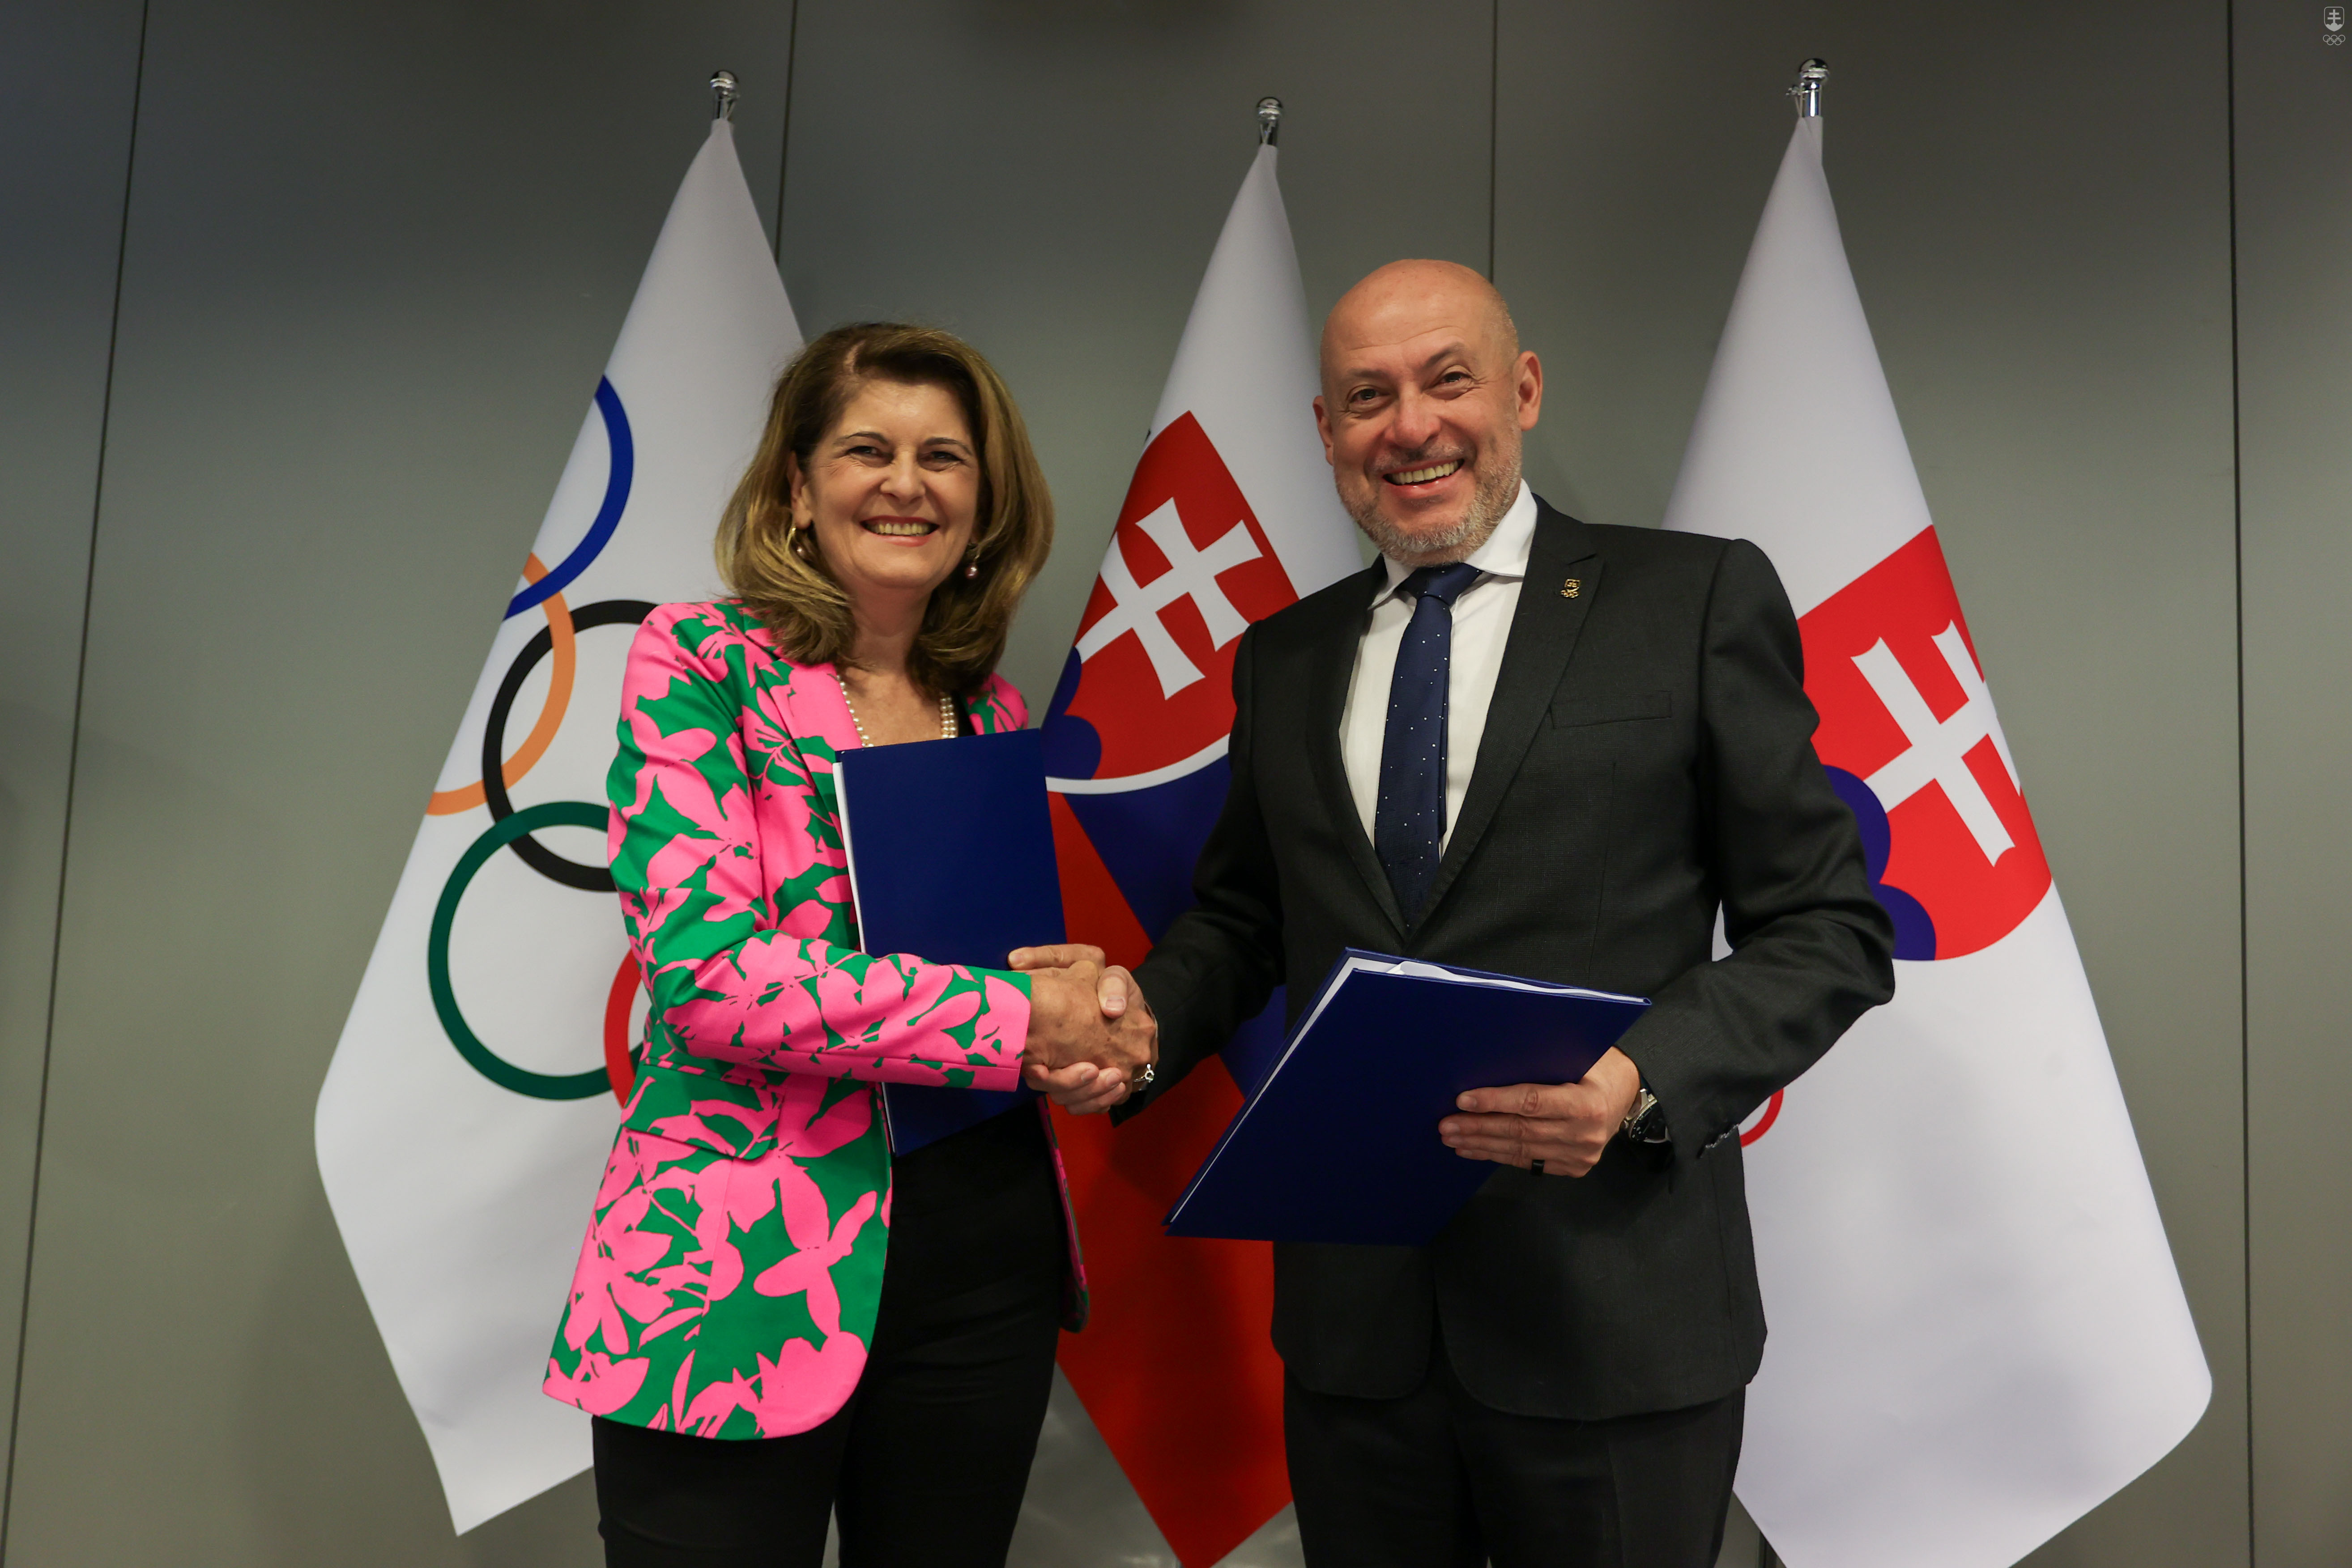 Zmluvu o vzájomnej spolupráci podpísali generálna riaditeľka Slovakia travel Ivana Vala Magátová a prezident Slovenského olympijského a športového výboru Anton Siekel.